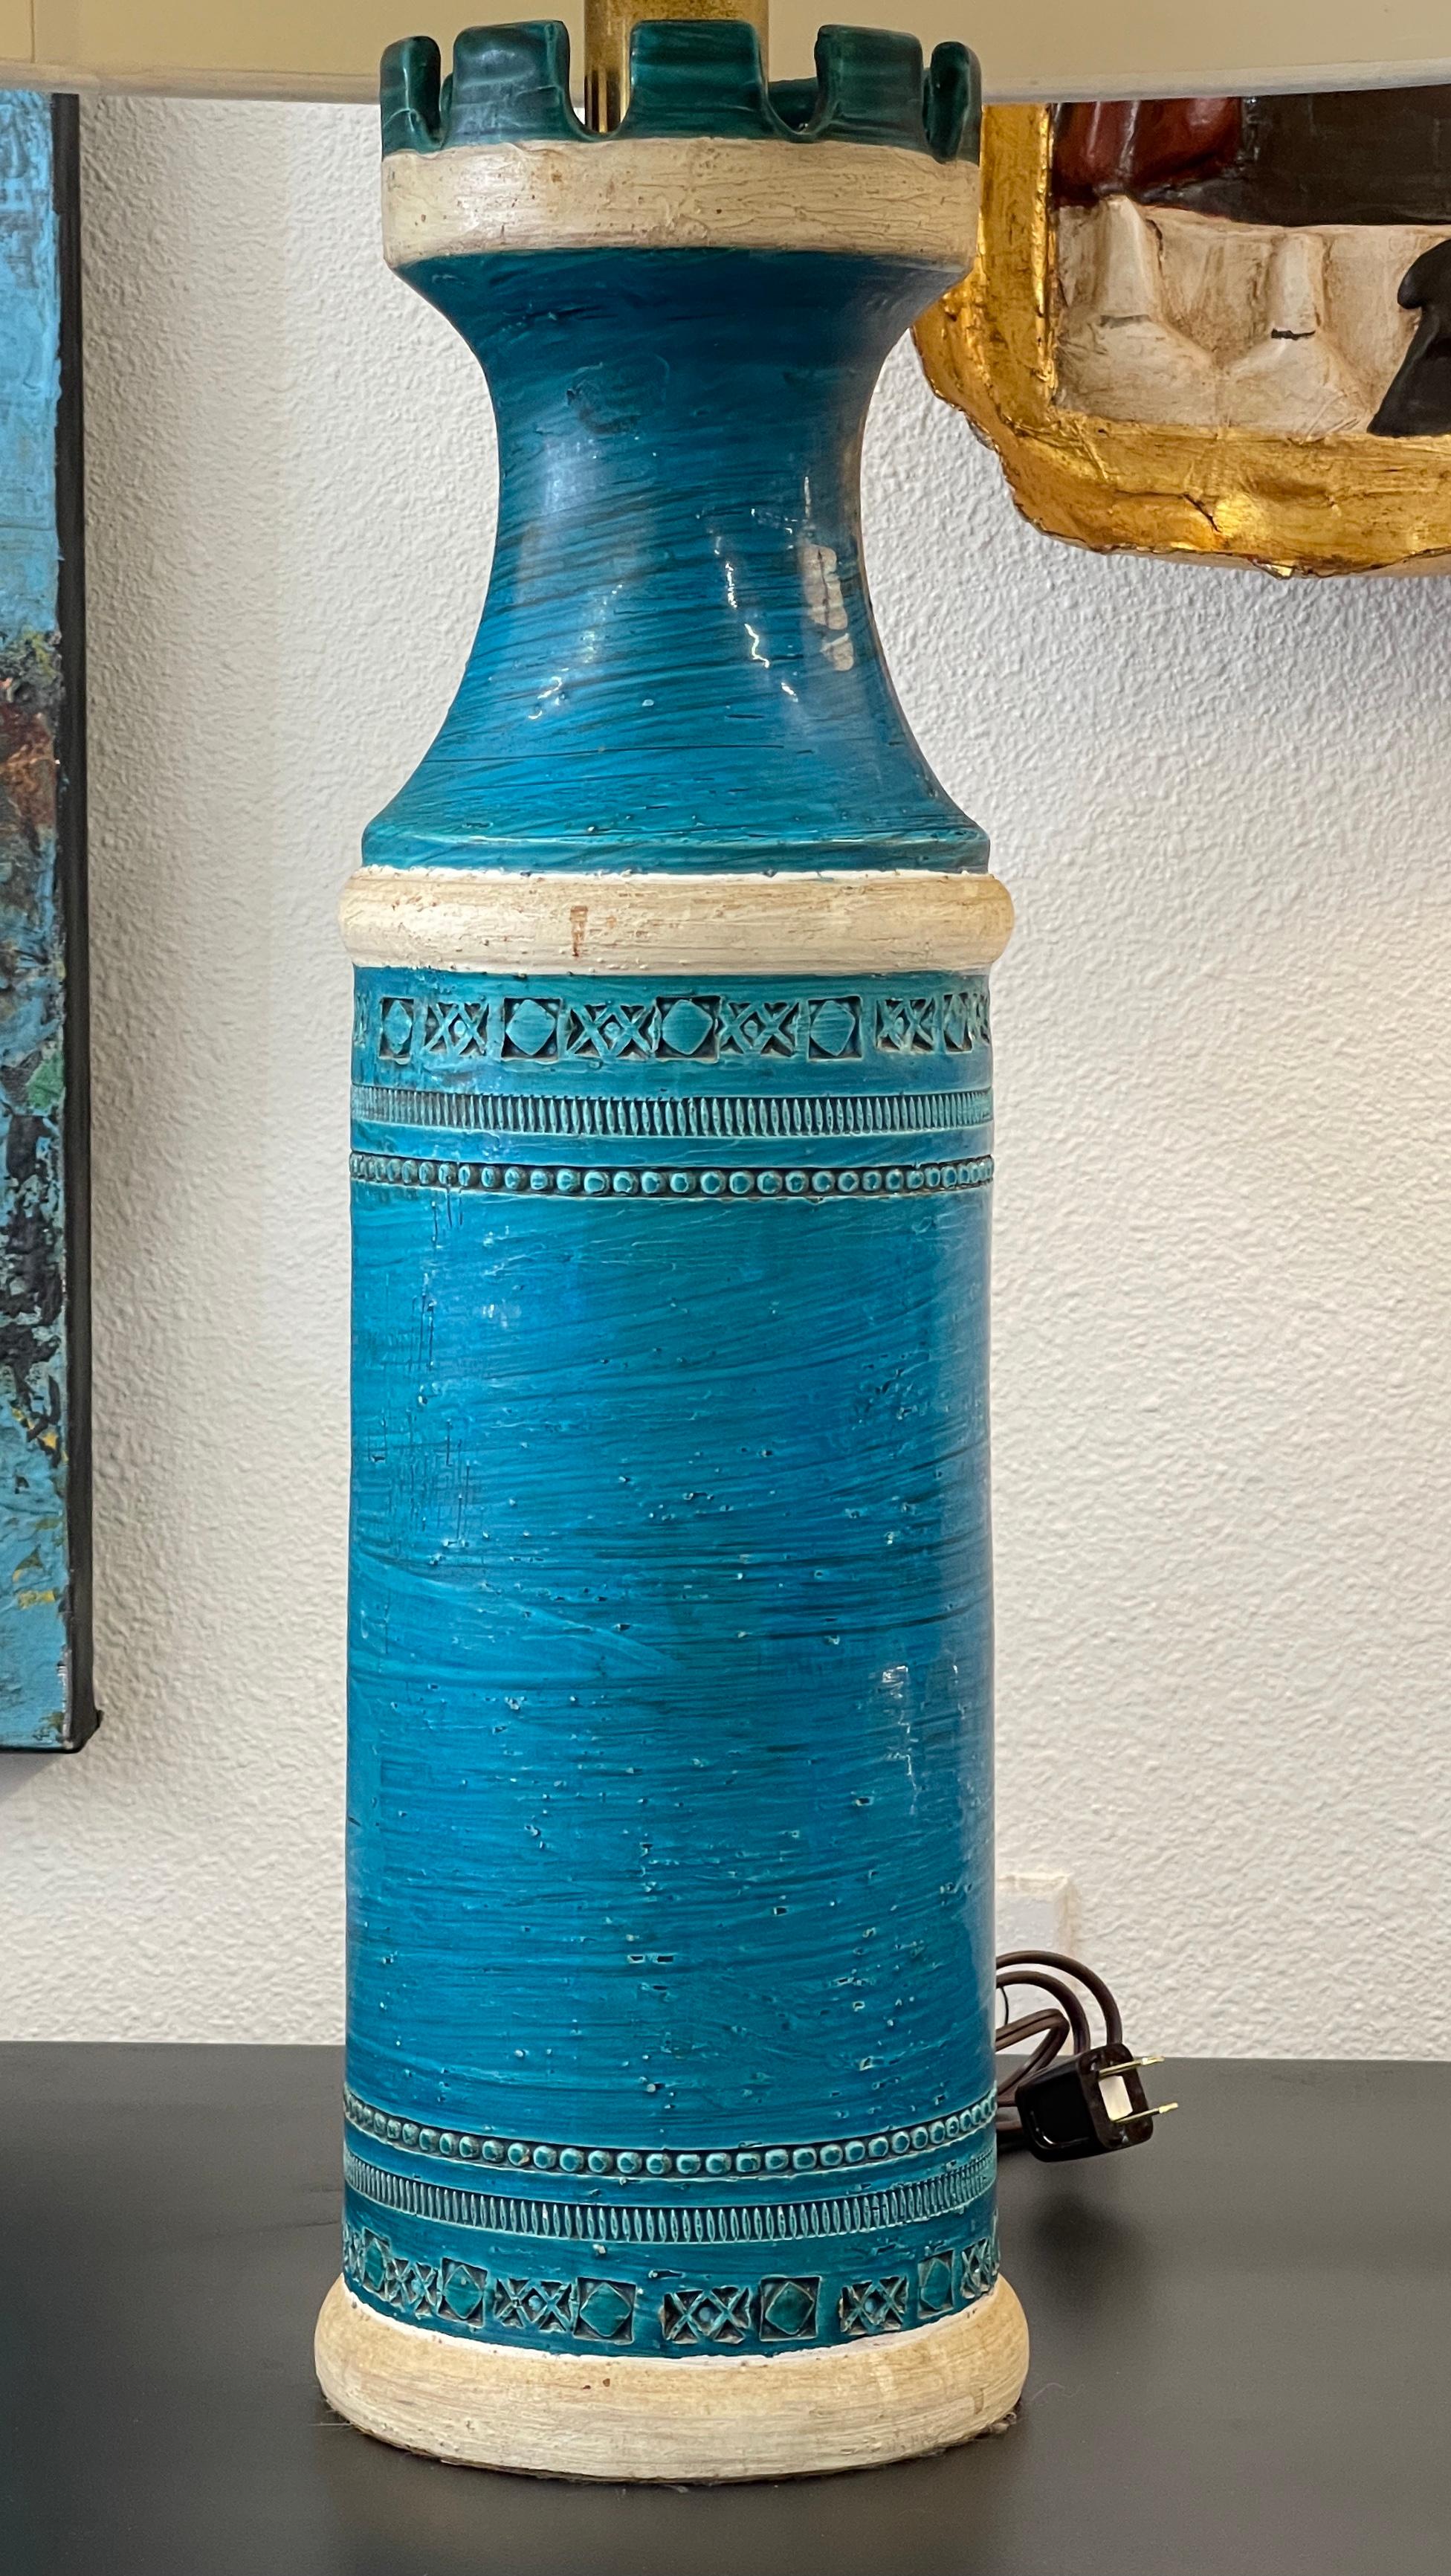 Schöne große Bitossi Keramiklampe, entworfen von Aldo Londi in Rimini Blau. Ungewöhnliches Schloss mit Spalierdach. Die Lampe wurde neu verkabelt und funktioniert gut. Der Schirm kann mitgenommen werden, hat aber einige Abnutzungserscheinungen und